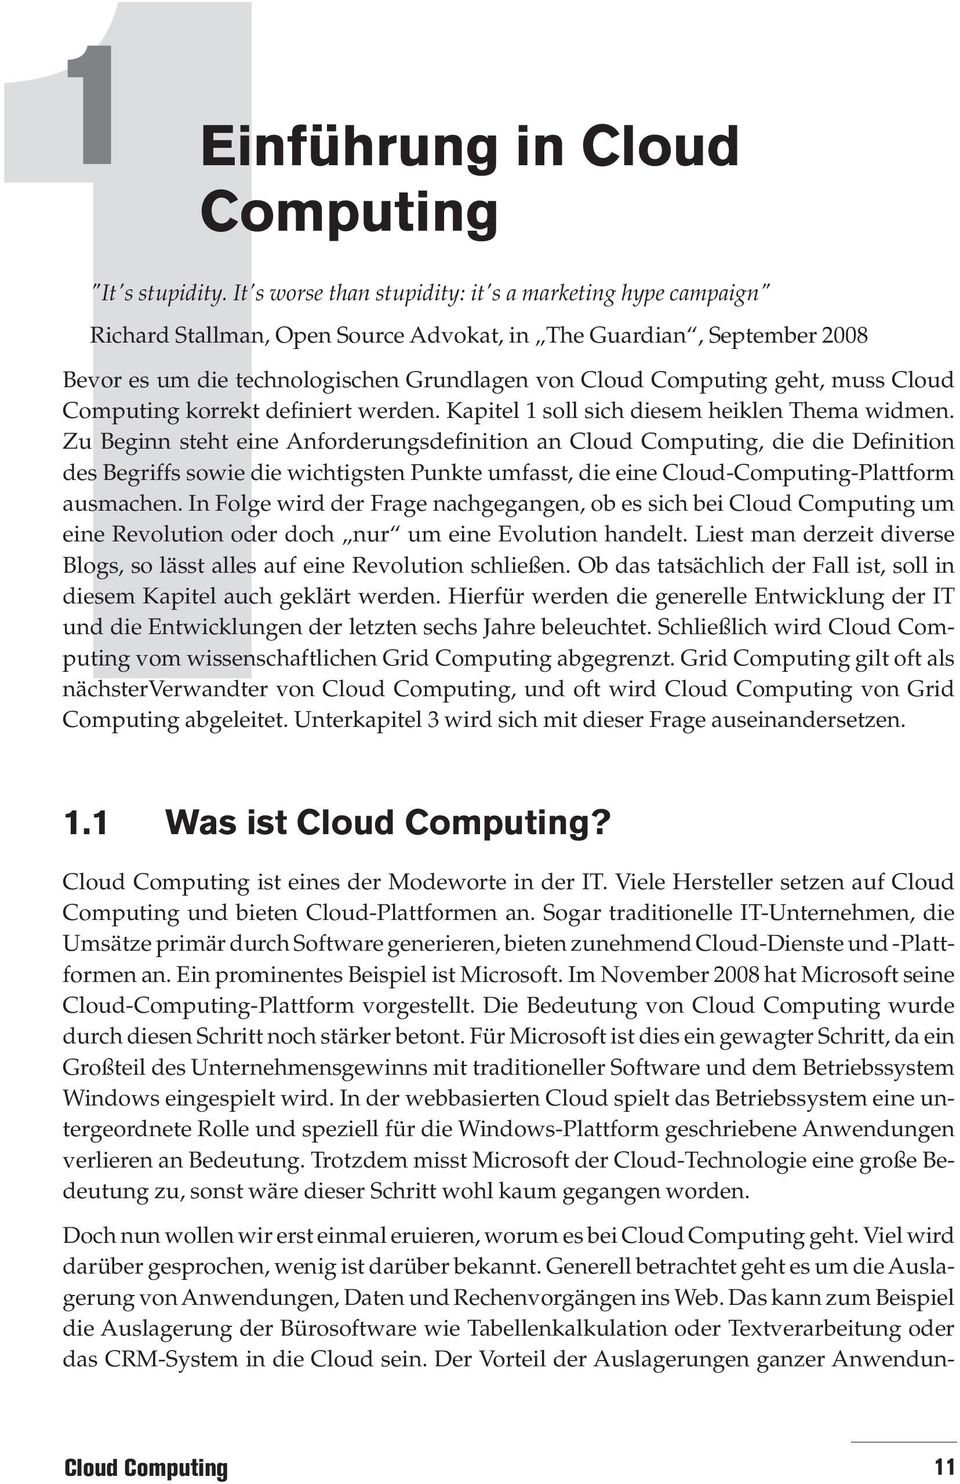 Grundlagen von geht, muss Cloud Computing korrekt definiert werden. Kapitel 1 soll sich diesem heiklen Thema widmen.